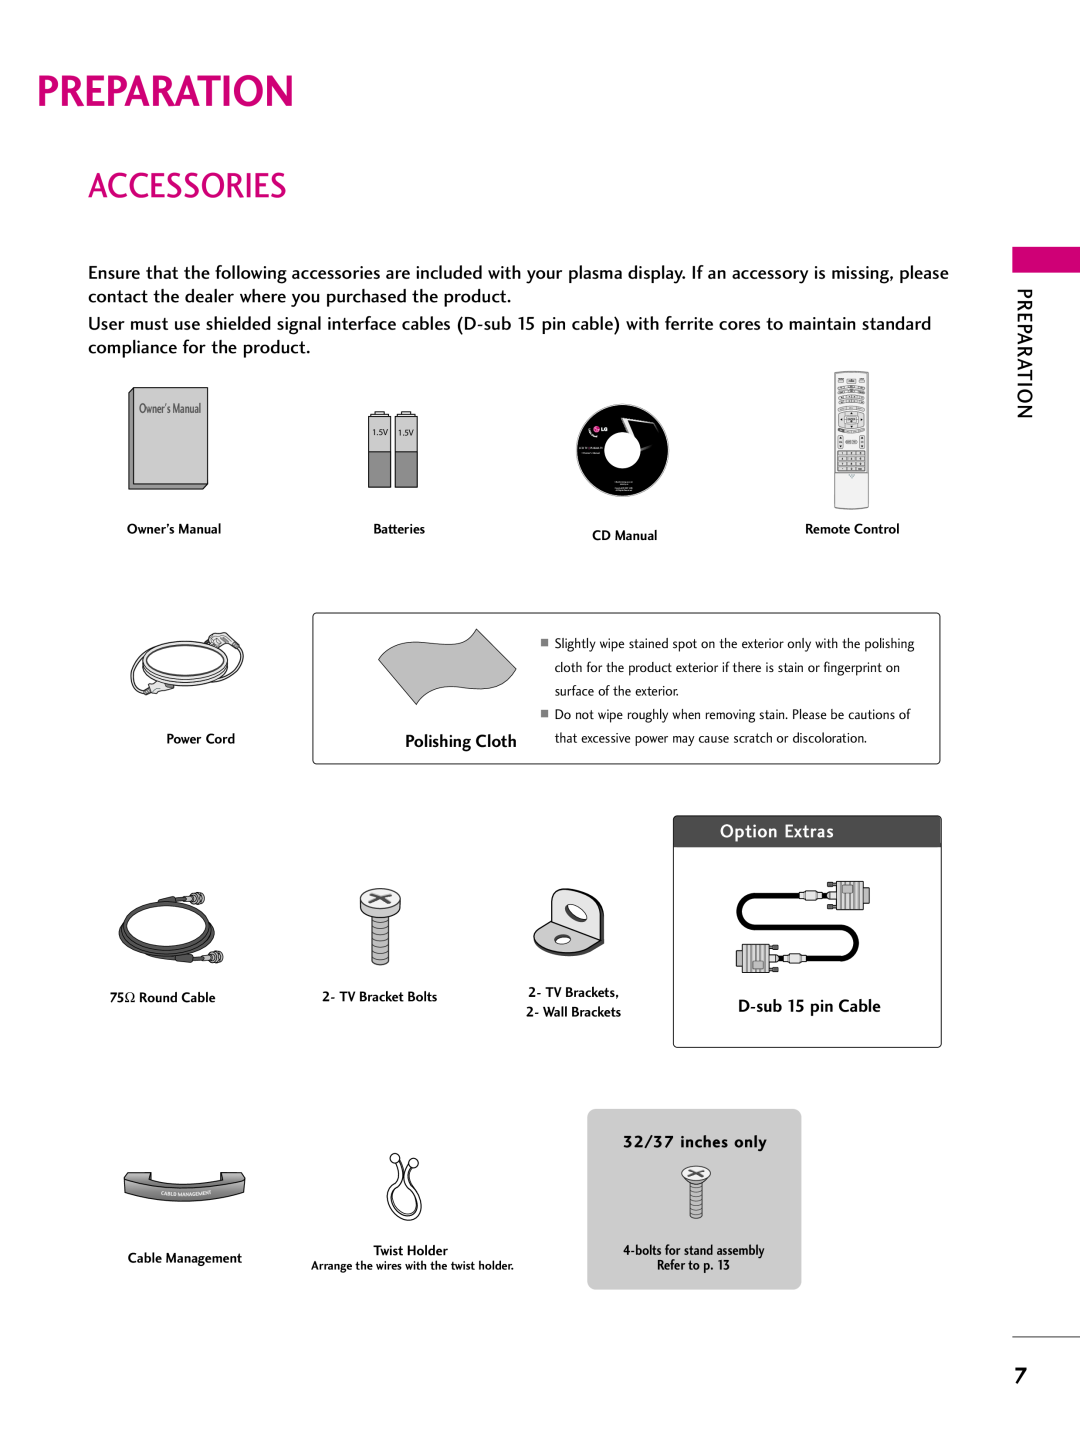 LG Electronics 3LB5D, 37LB5D owner manual Preparation, Accessories 